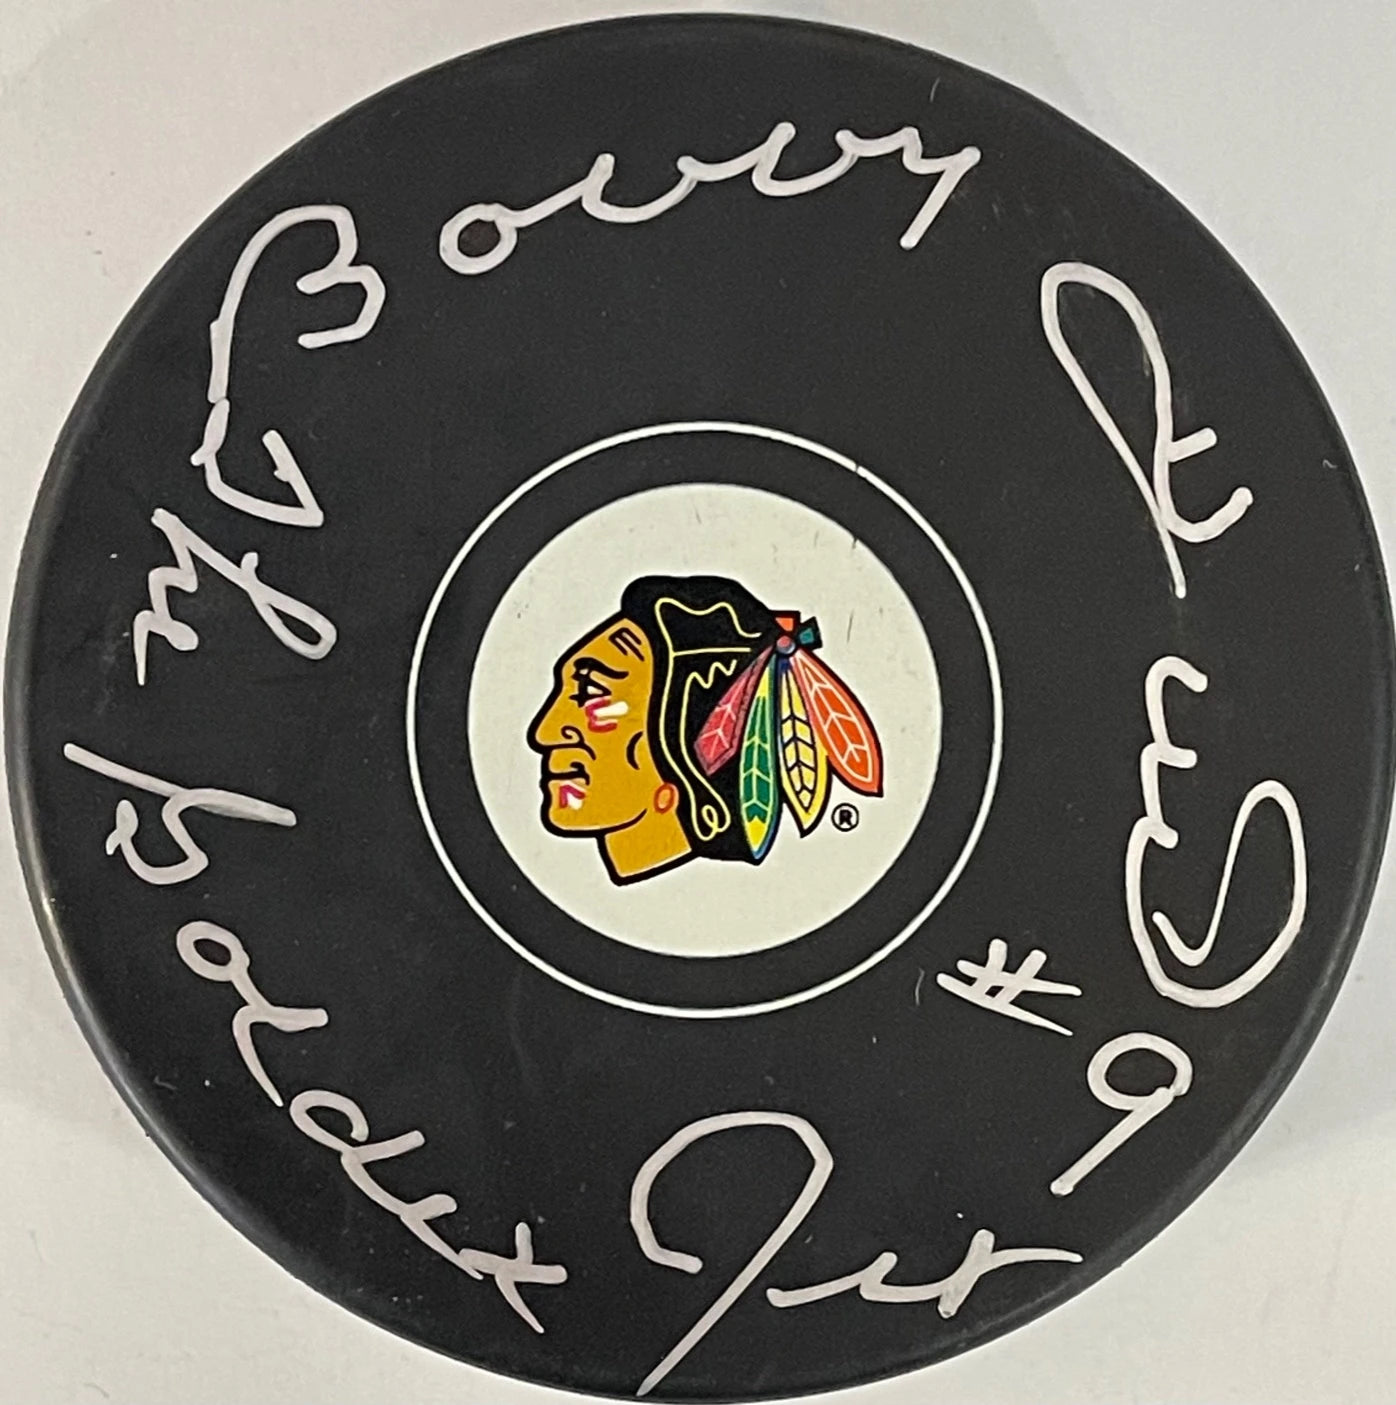 Chicago Blackhawks Tribute Autographed Jersey Silent Auction